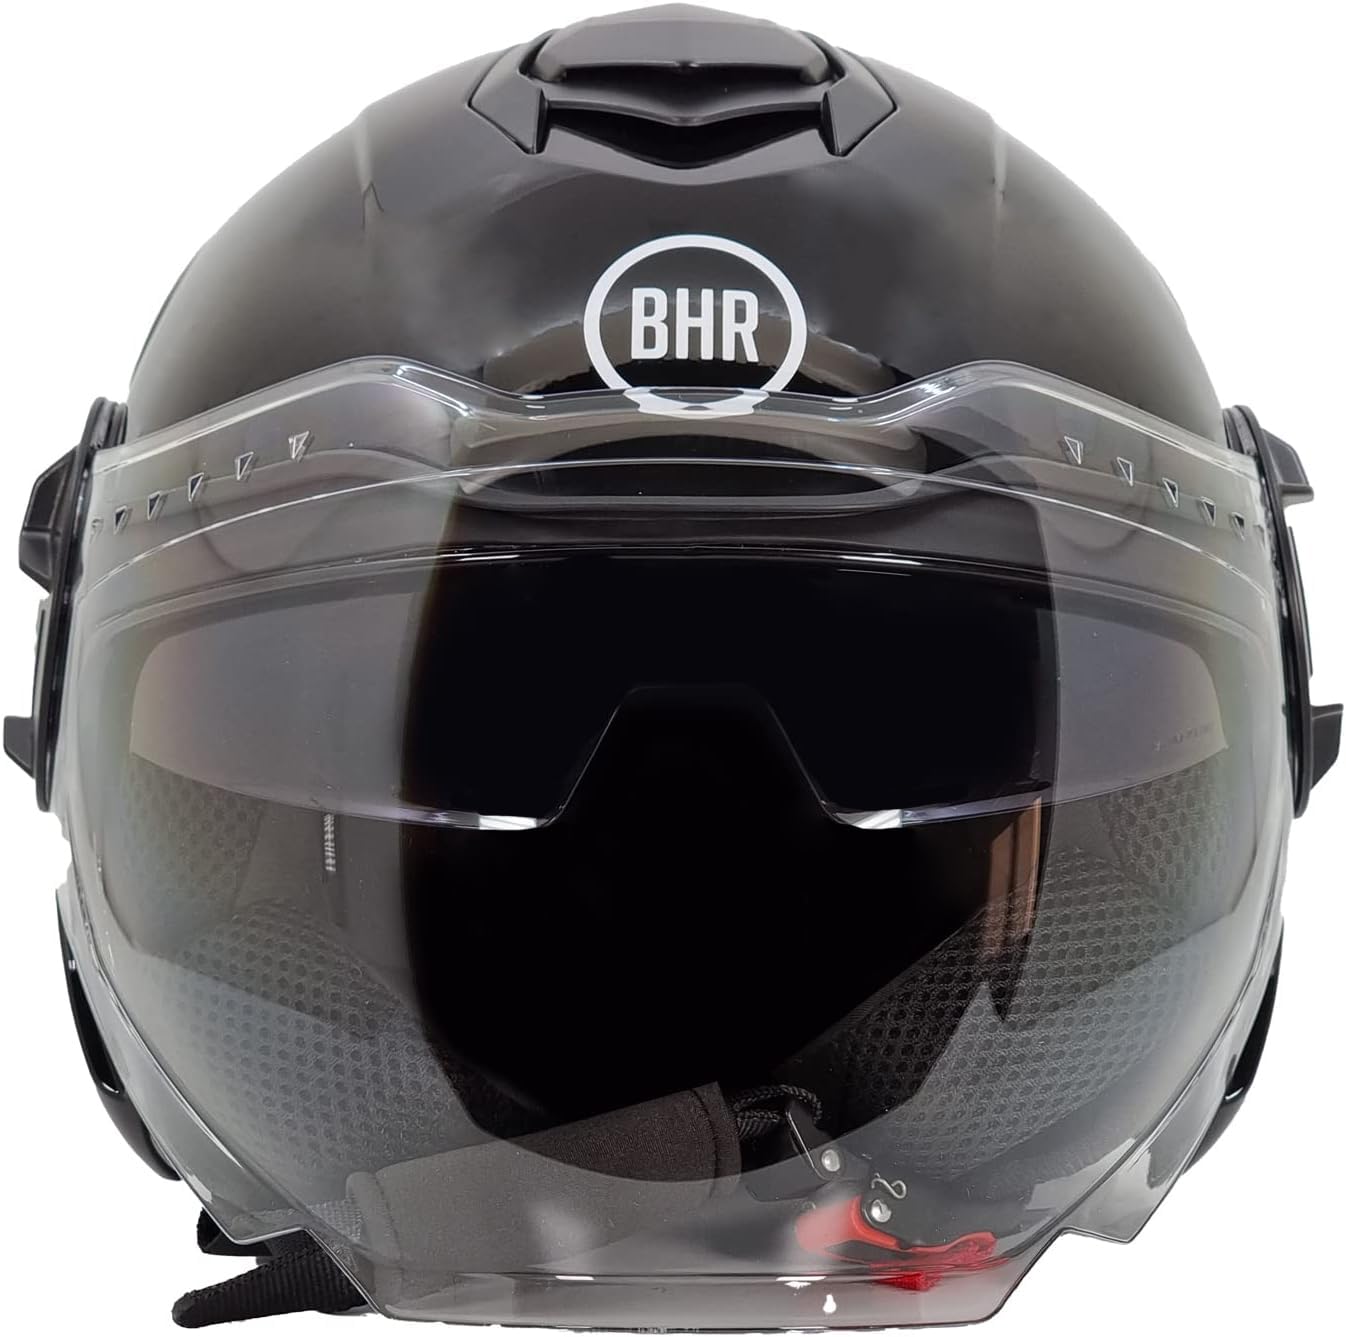 BHR Jet Helm Double Visor 830 FLASH, Scooter Helm mit ECE 22.06 Zulassung, Leichter & komfortabler Jet Helm mit innenliegender Sonnenblende, Metallisch schwarz, L